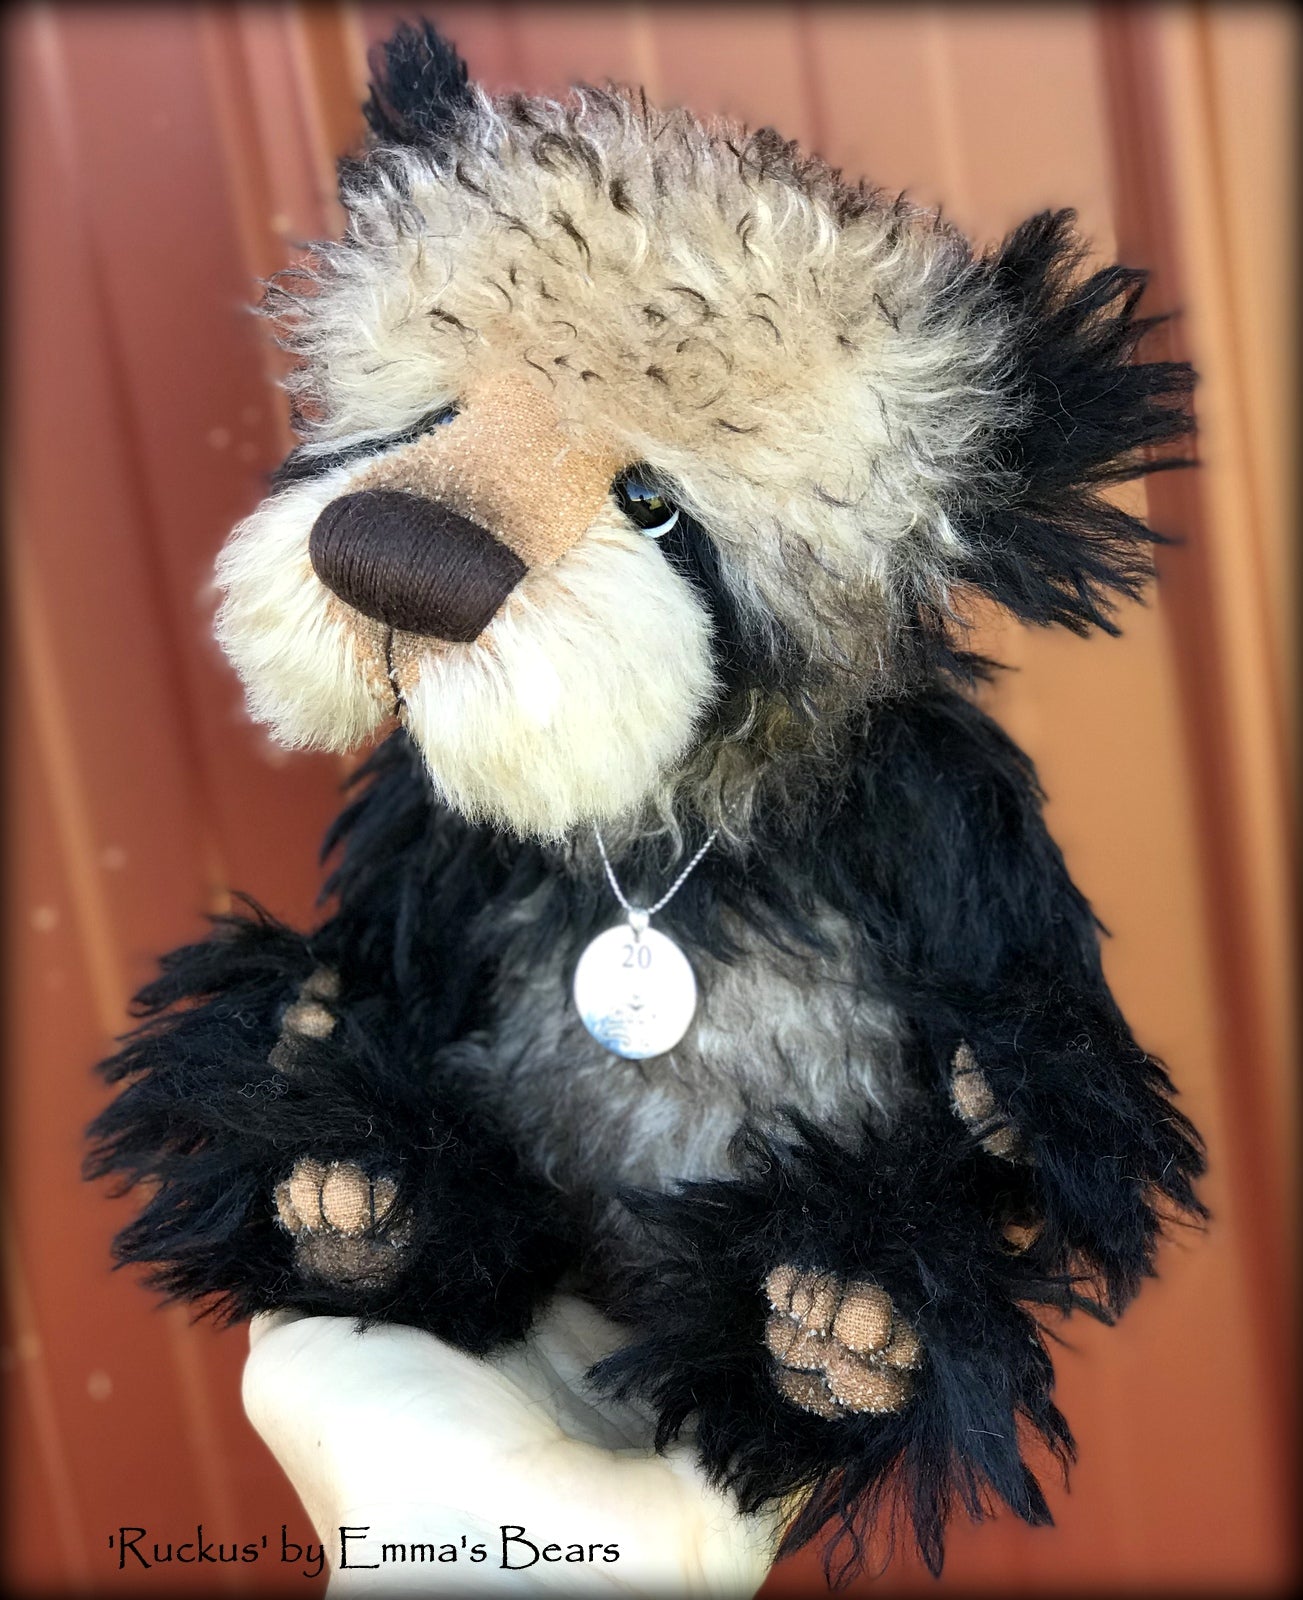 Ruckus - 20 Years of Emma's Bears Commemorative Teddy - OOAK in a series